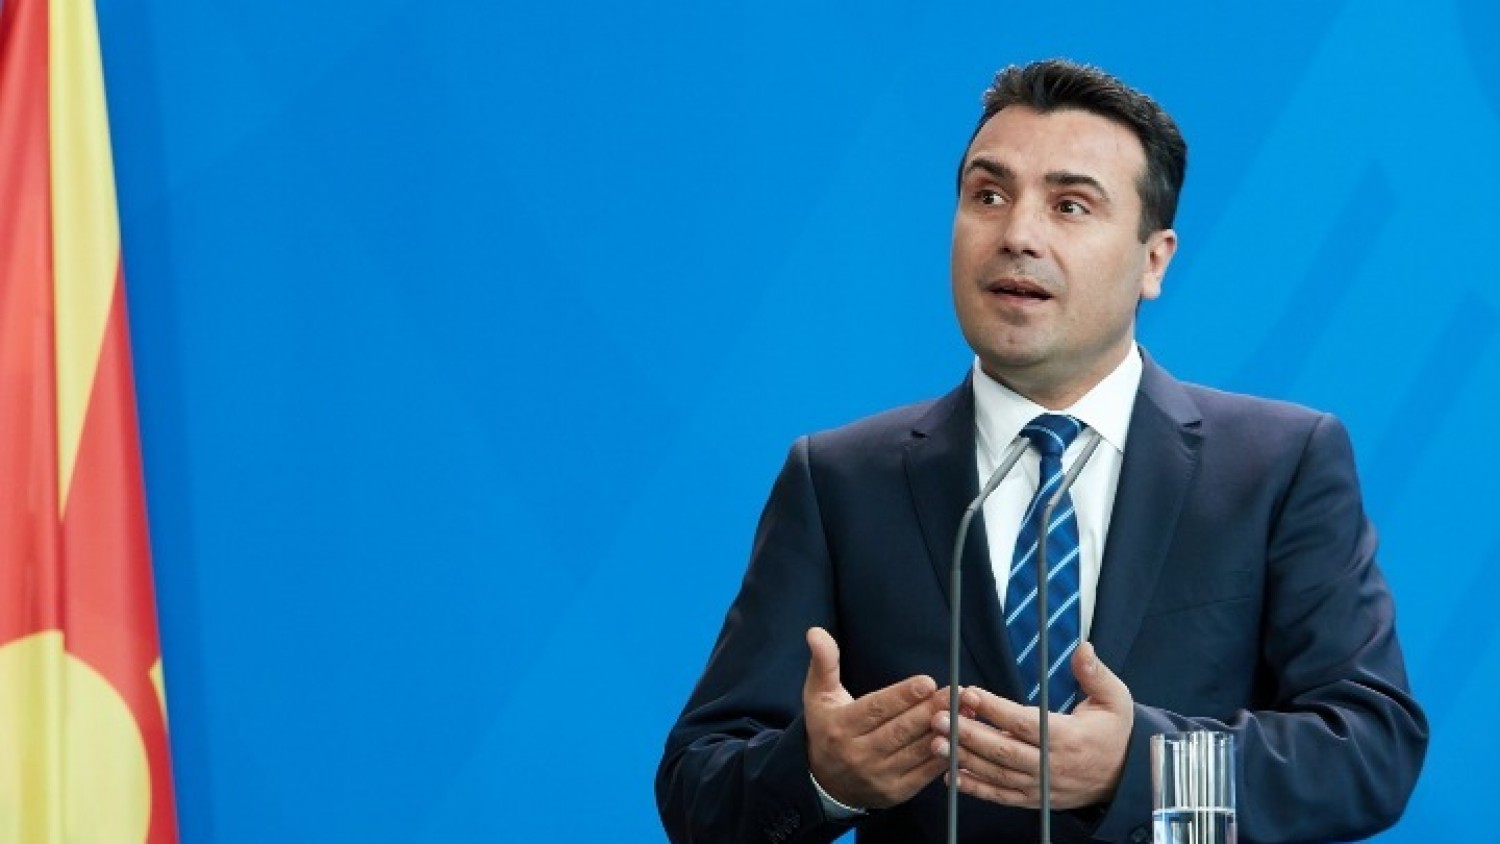 Το κυβερνών κόμμα στα Σκόπια χρησιμοποιεί το όνομα «Μακεδονία» παραβιάζοντας την κάκιστη Συμφωνία των Πρεσπών